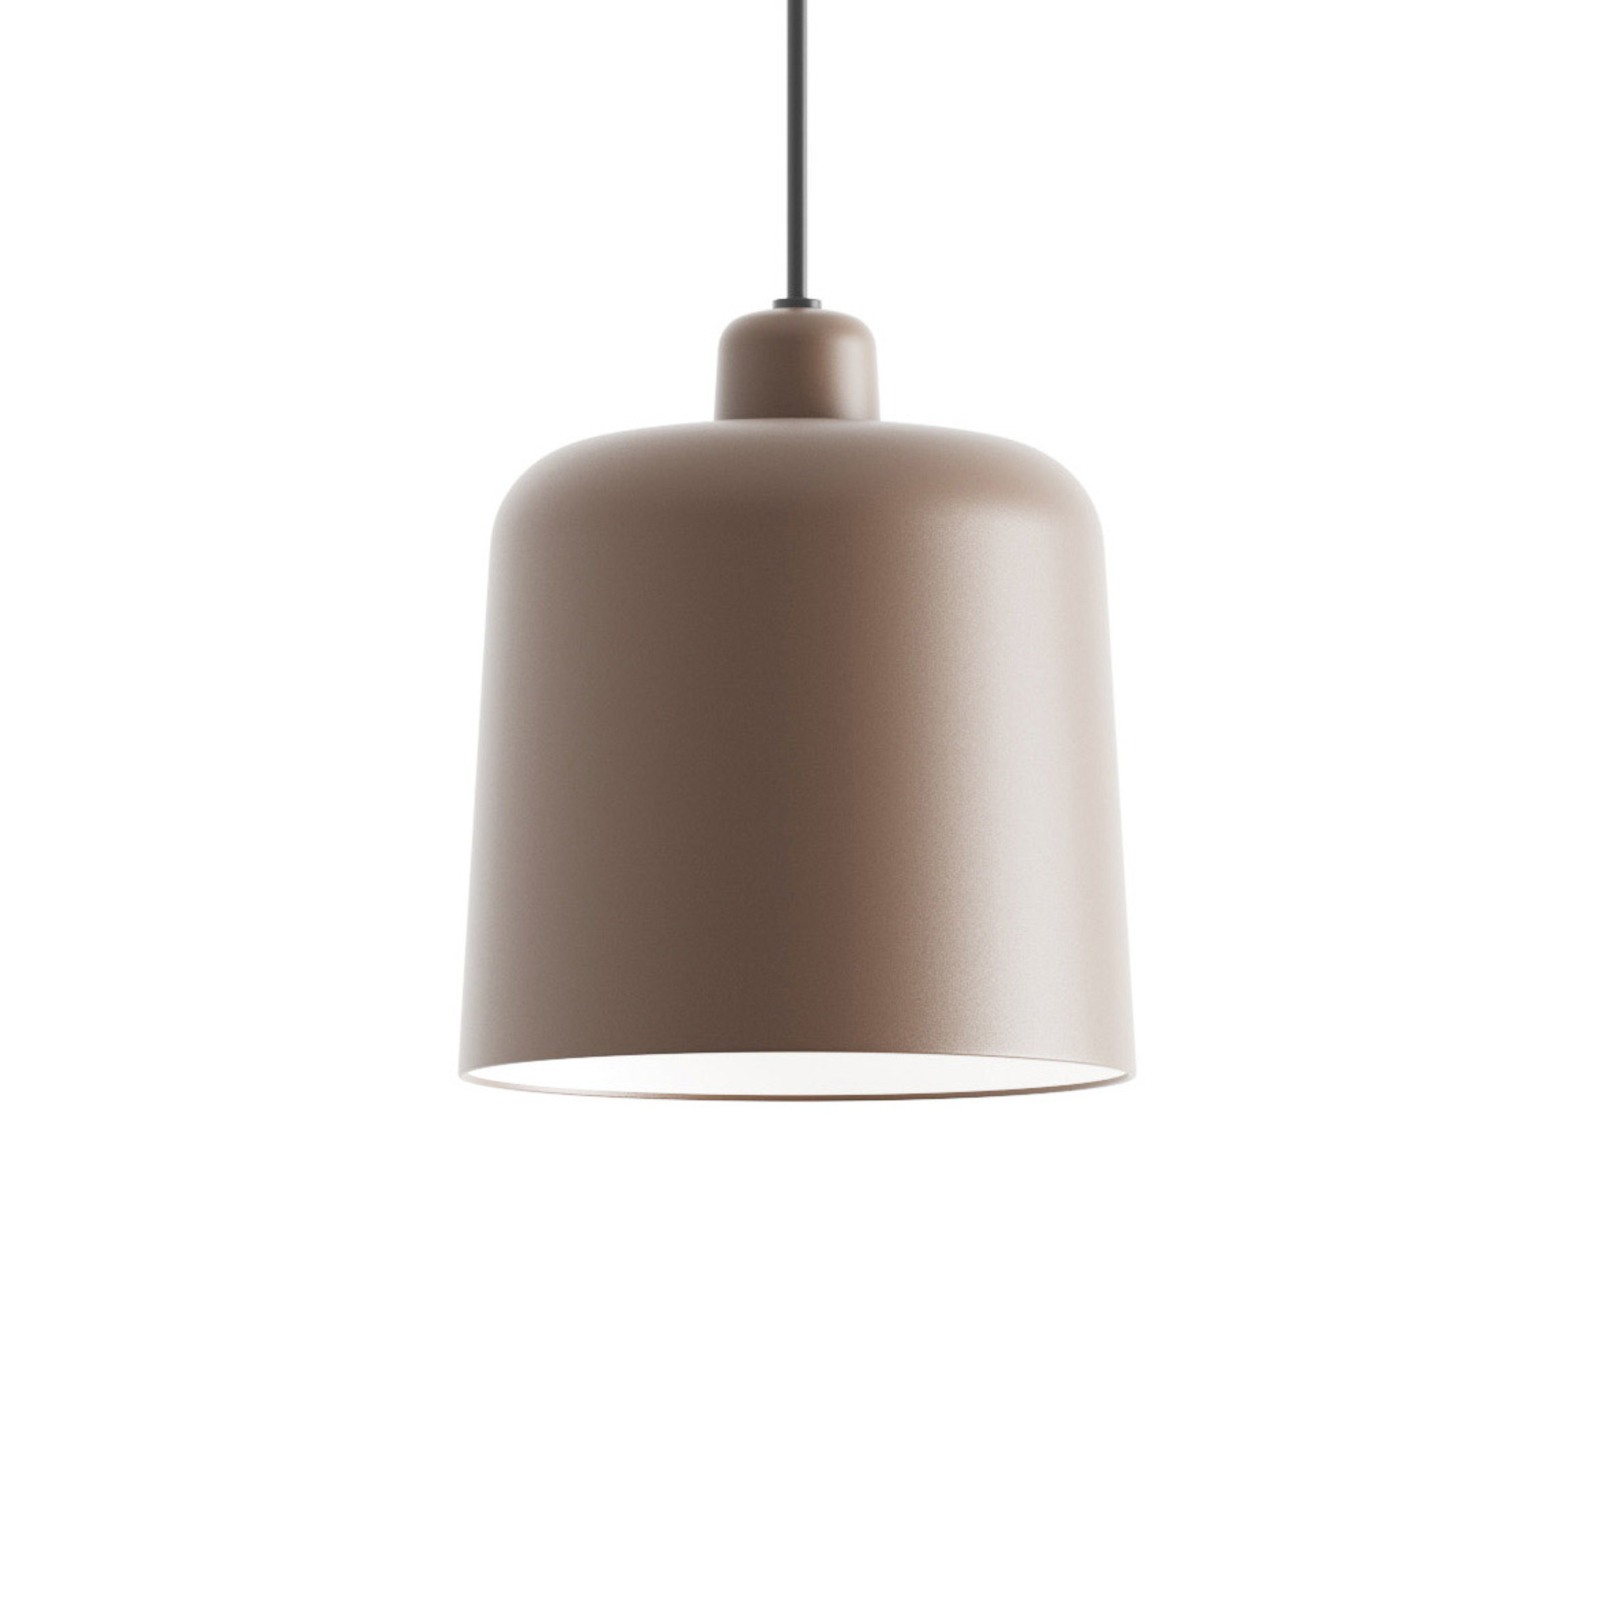 Luceplan Zile hanglamp baksteenrood mat, Ø 20 cm